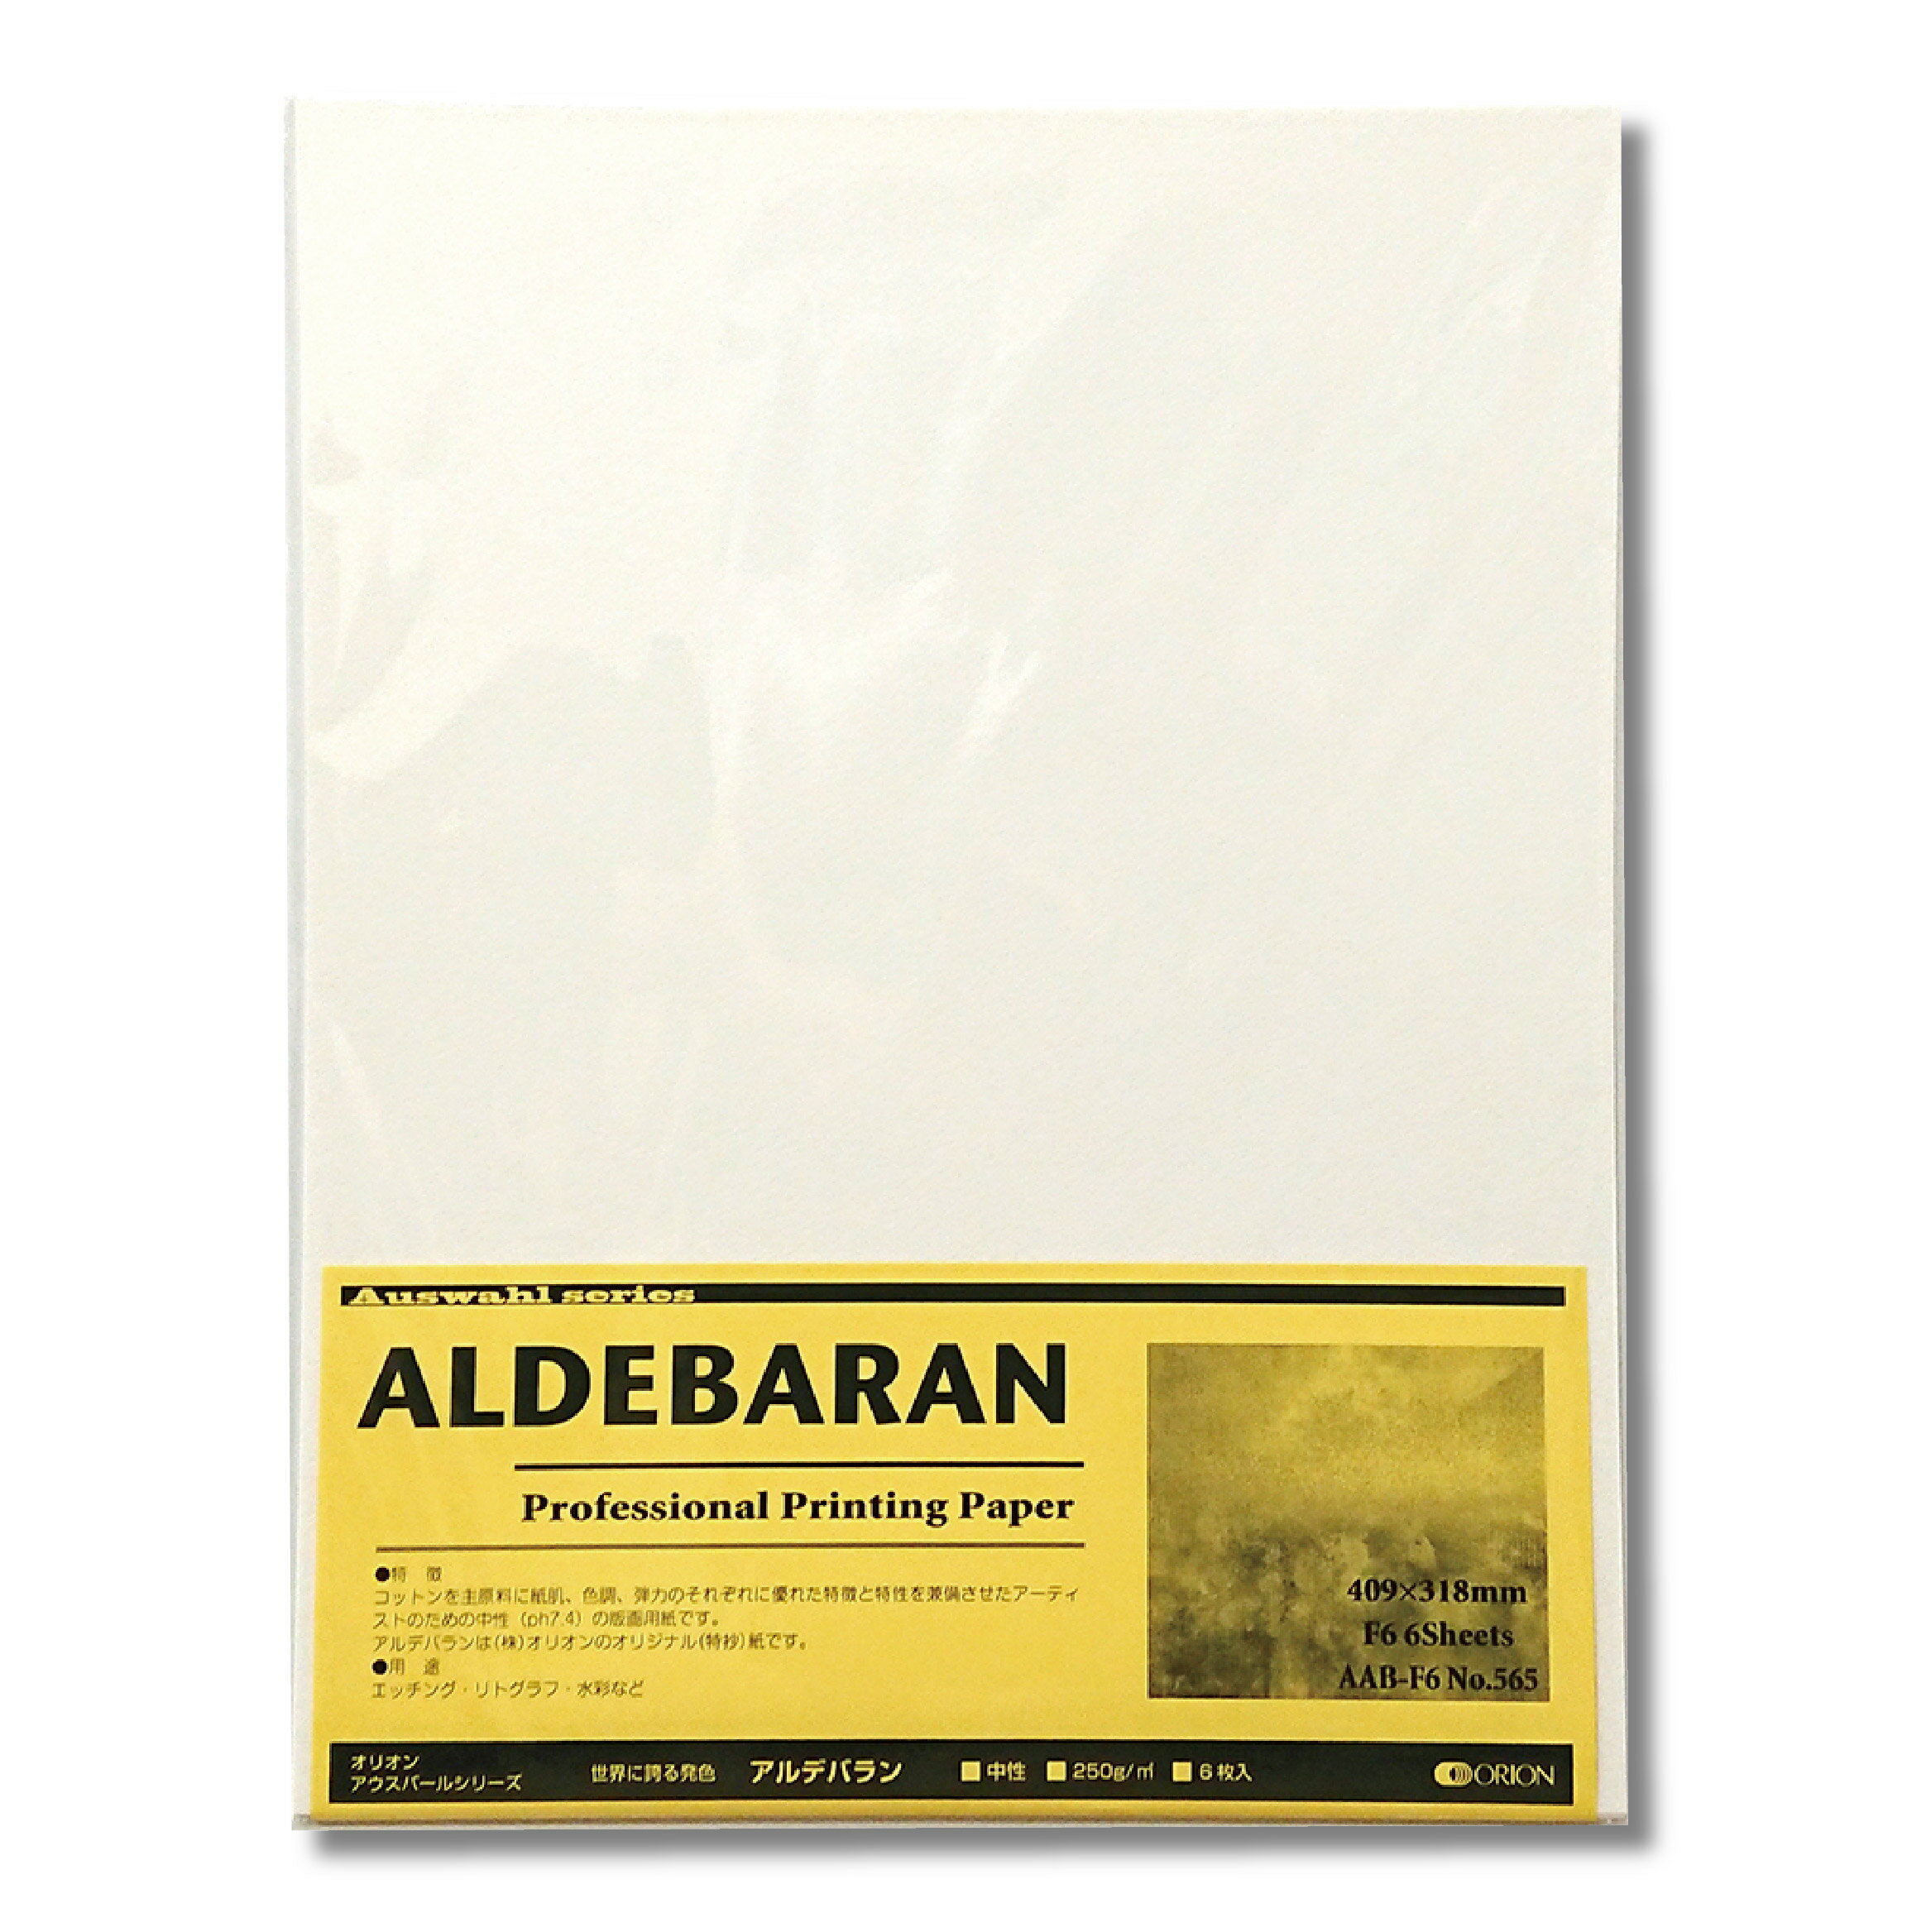 オリオン アルデバラン紙 250g F6サイズ 5枚入り 版画用紙 水彩紙 409mm×318mm AAB-F6 アウスバールシリーズ